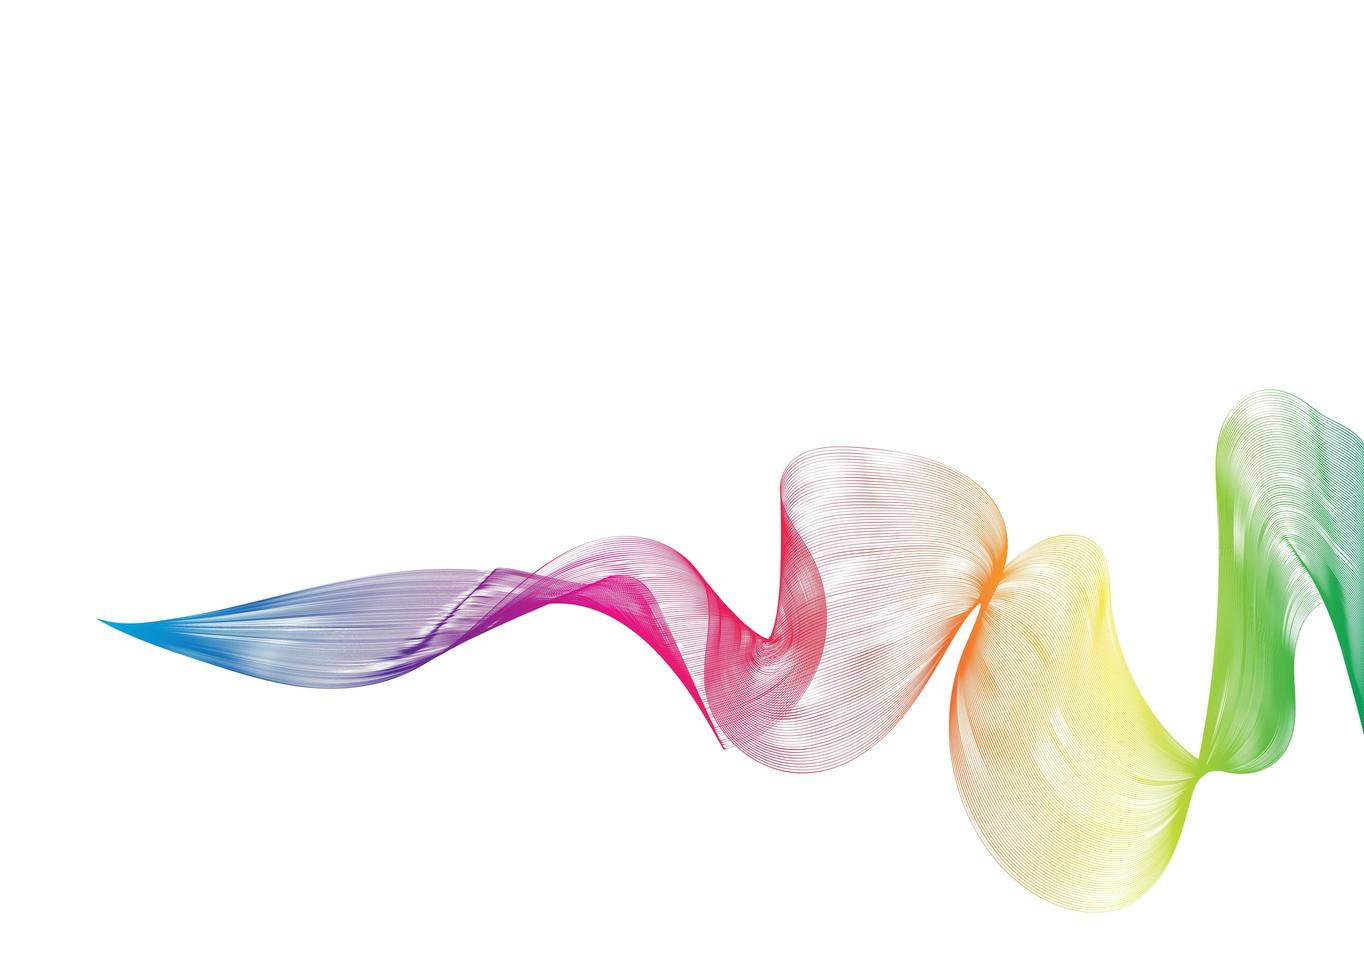 projeto abstrato do fundo da onda. fundo de arte de linha elegante com ondas coloridas brilhantes. linha ondulada curvada em fundo branco. foto